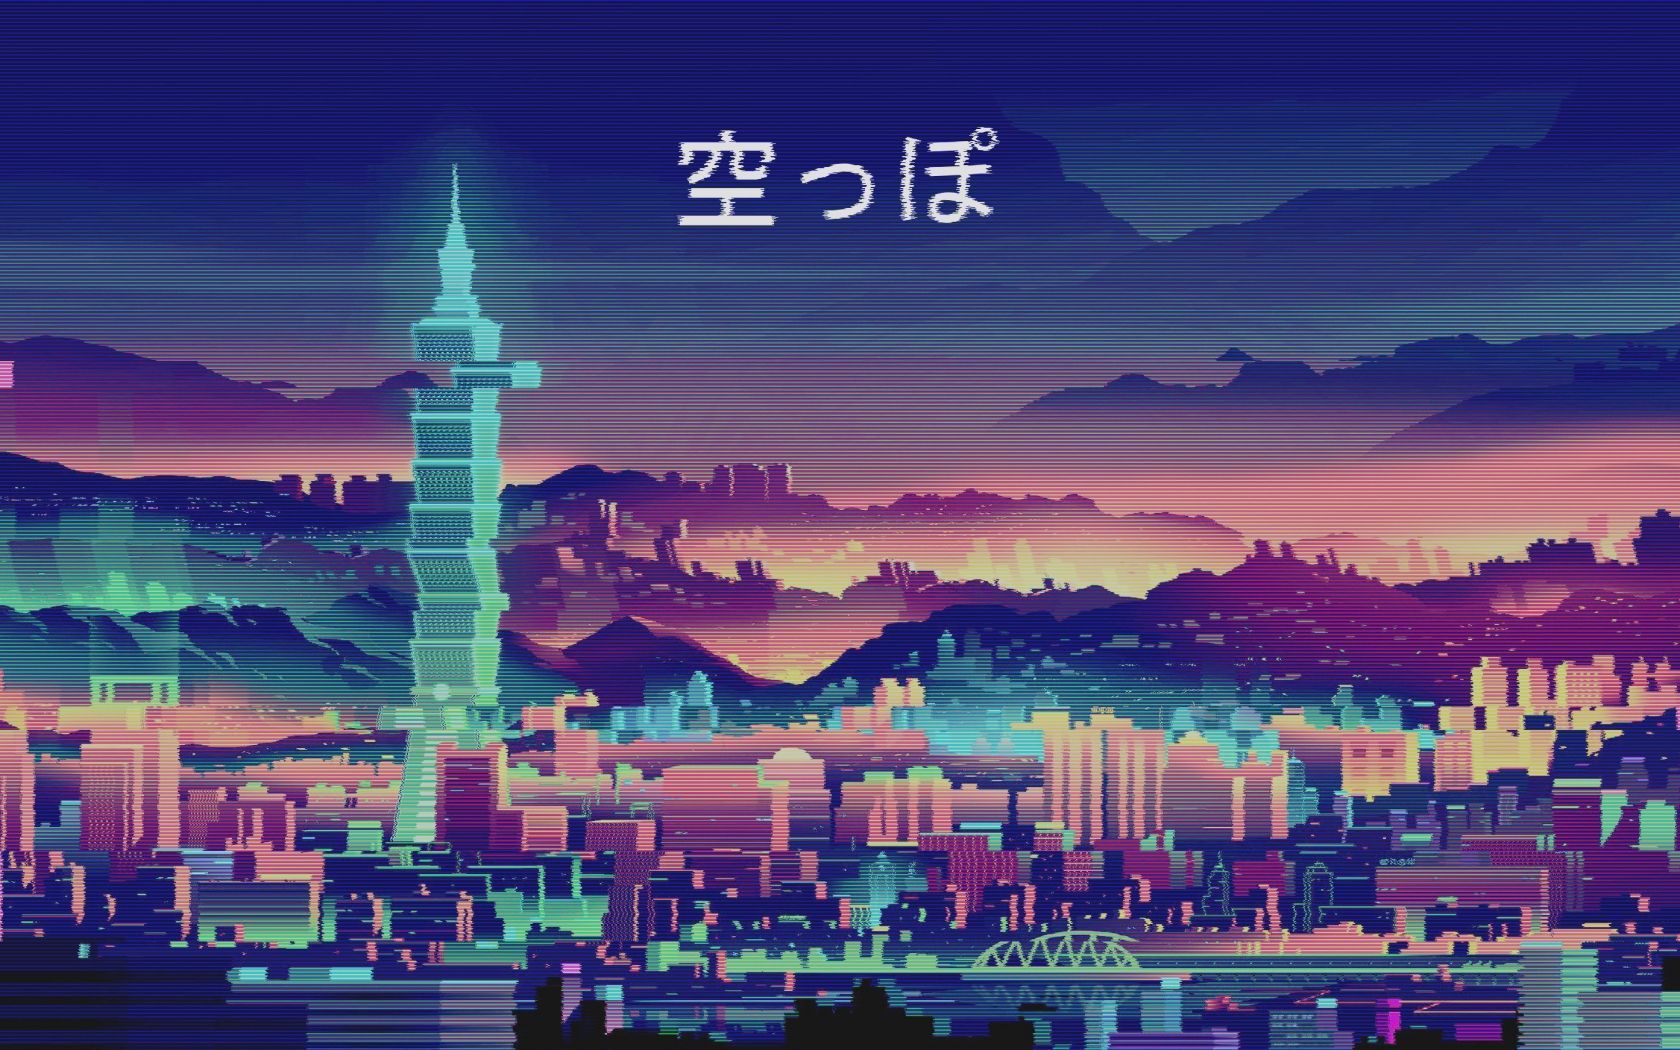 Attack On Titan Anime Wallpapers - Apps on Google Play | امبراطورية الأنمي  Amino